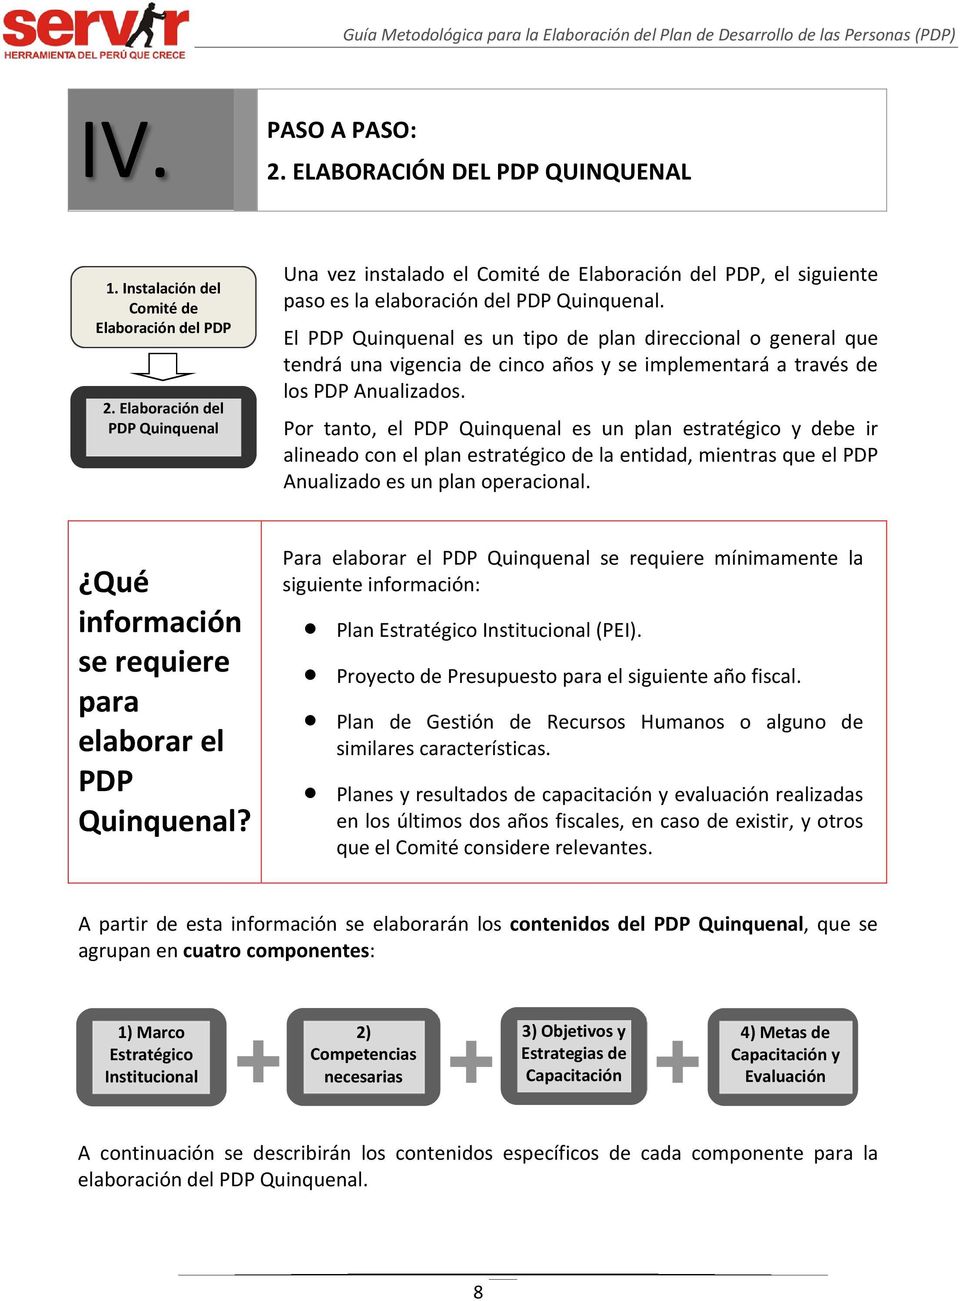 El PDP Quinquenal es un tipo de plan direccional o general que tendrá una vigencia de cinco años y se implementará a través de los PDP Anualizados.